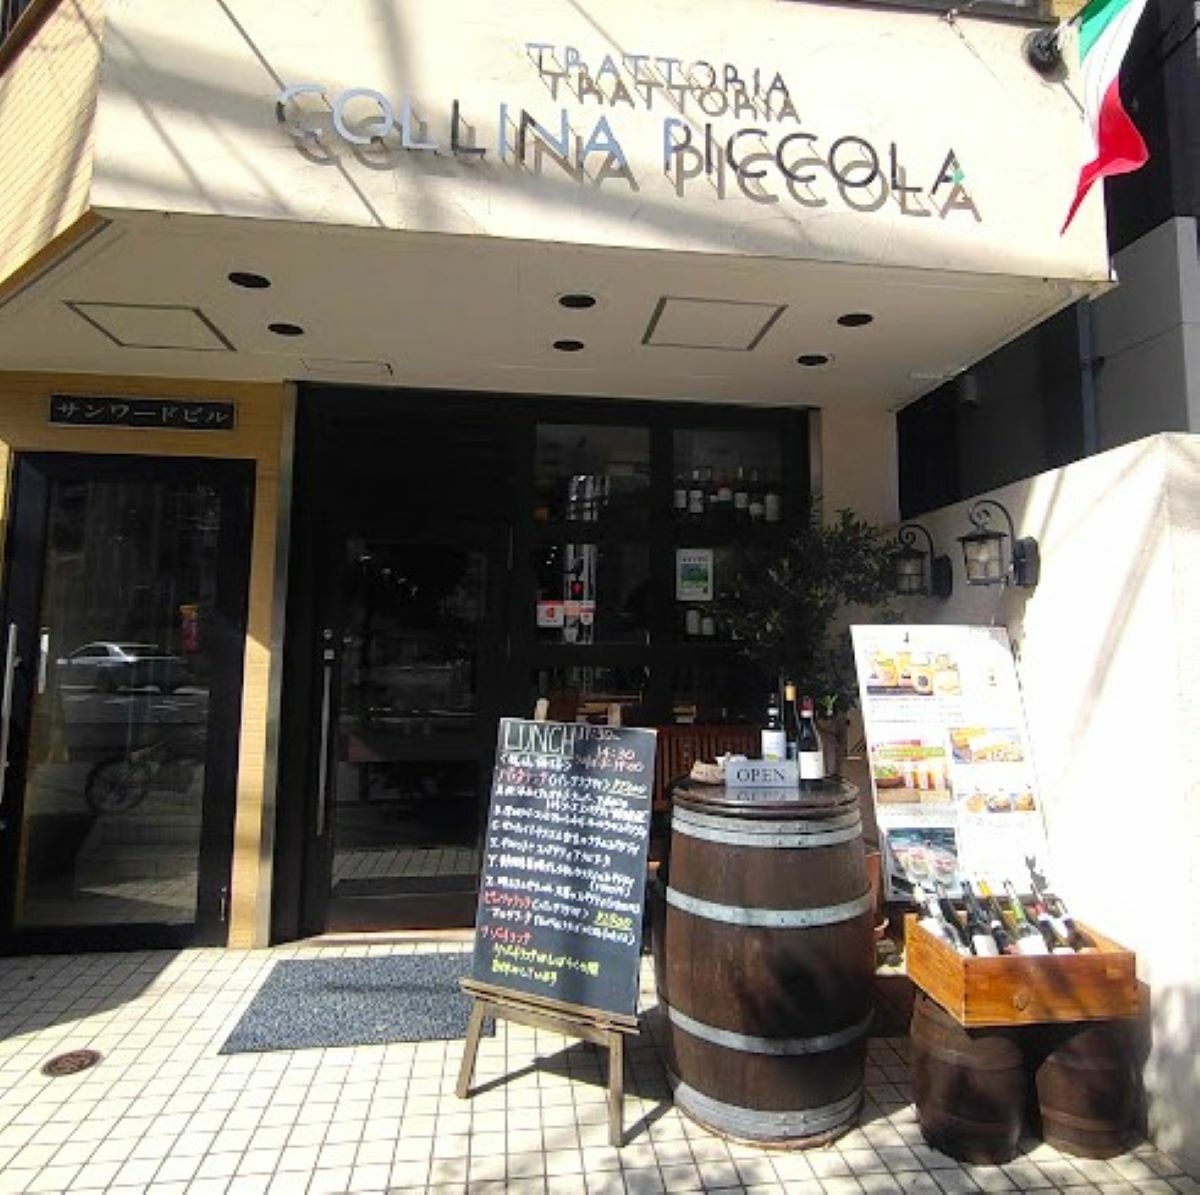 イタリア国旗がはためきく店舗前。ワイン樽とメニューの看板が目を引きます。